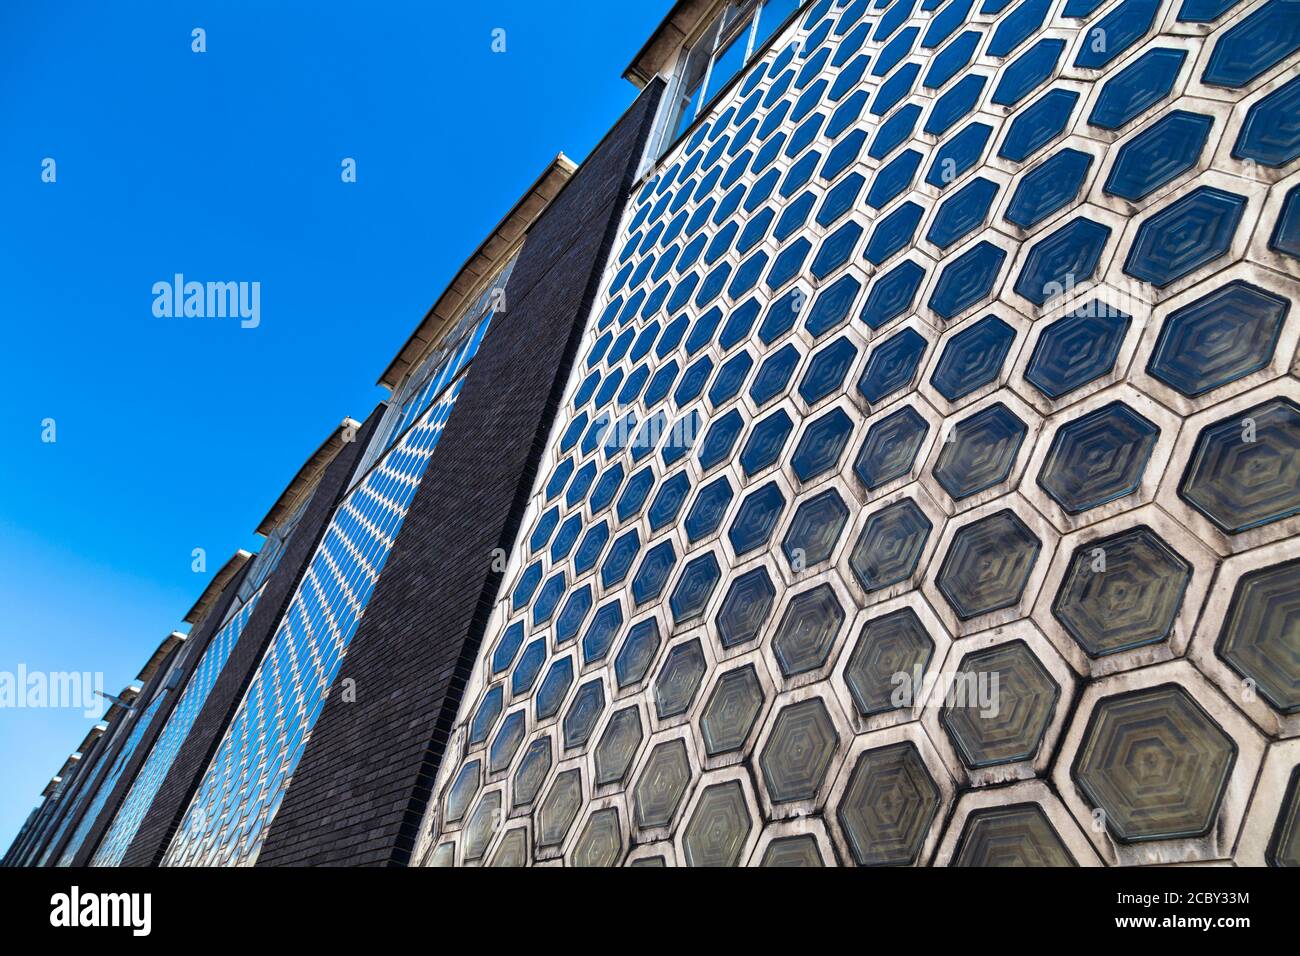 Carreaux de verre hexagonaux sur la façade de Smithfield Poultry Market, Farringdon, Londres, Royaume-Uni Banque D'Images